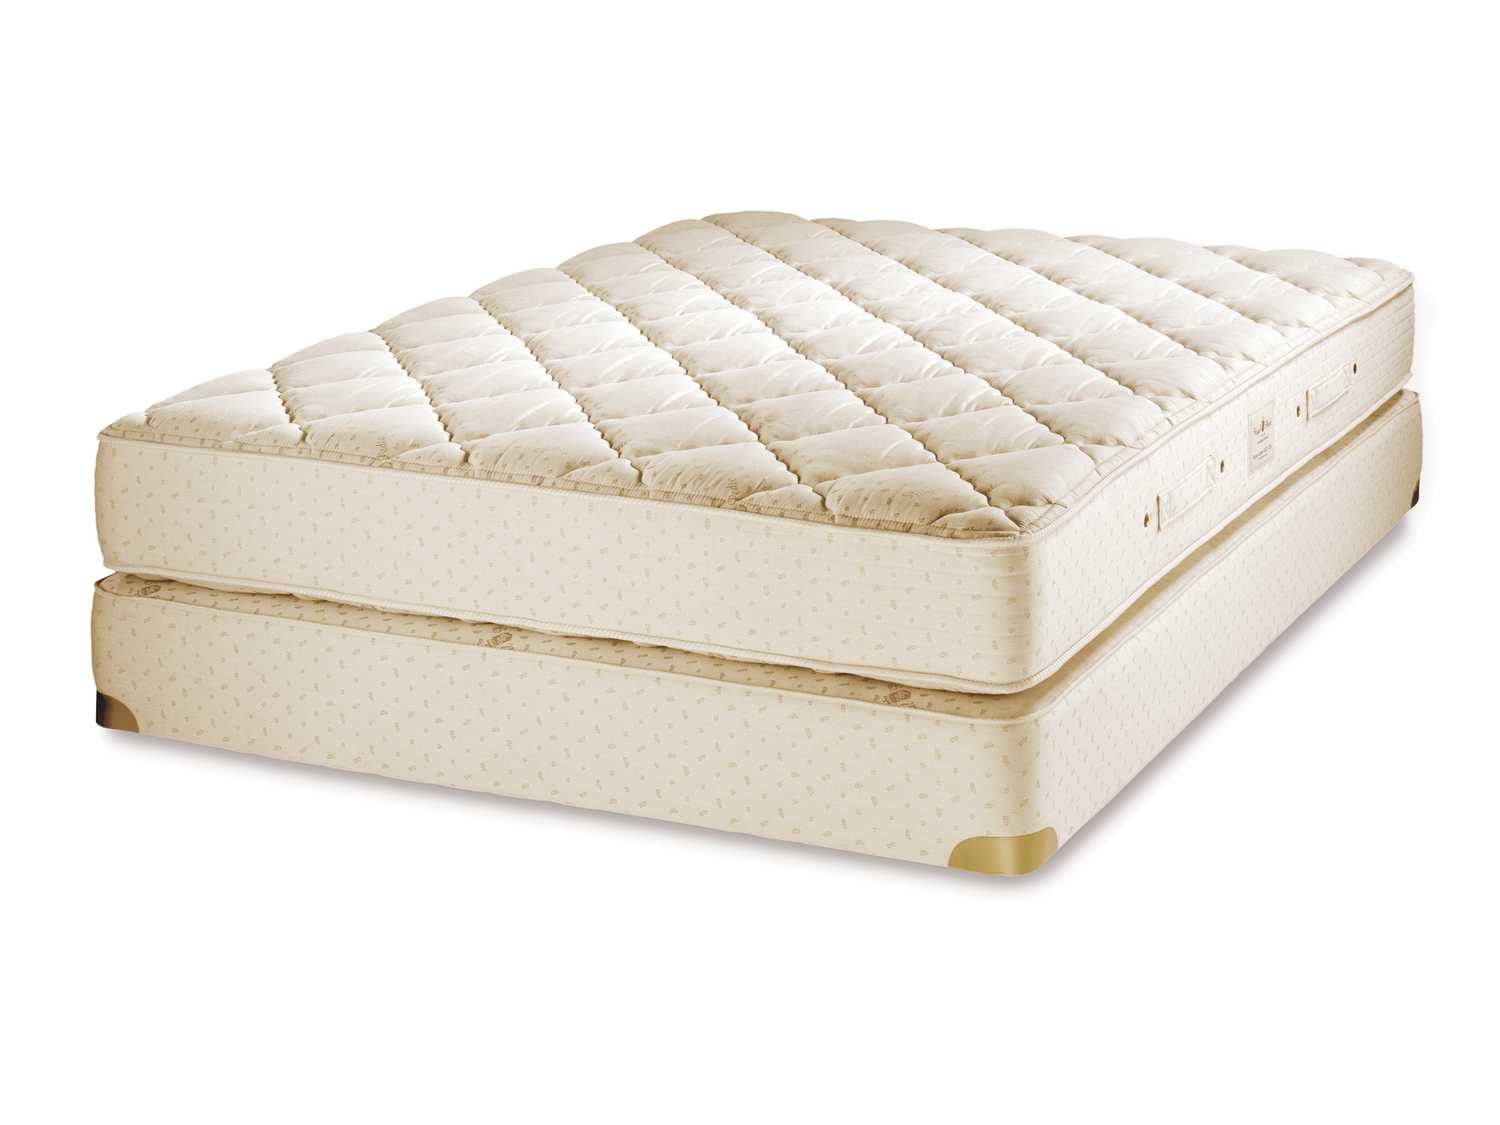 royal pedic mattress for sale